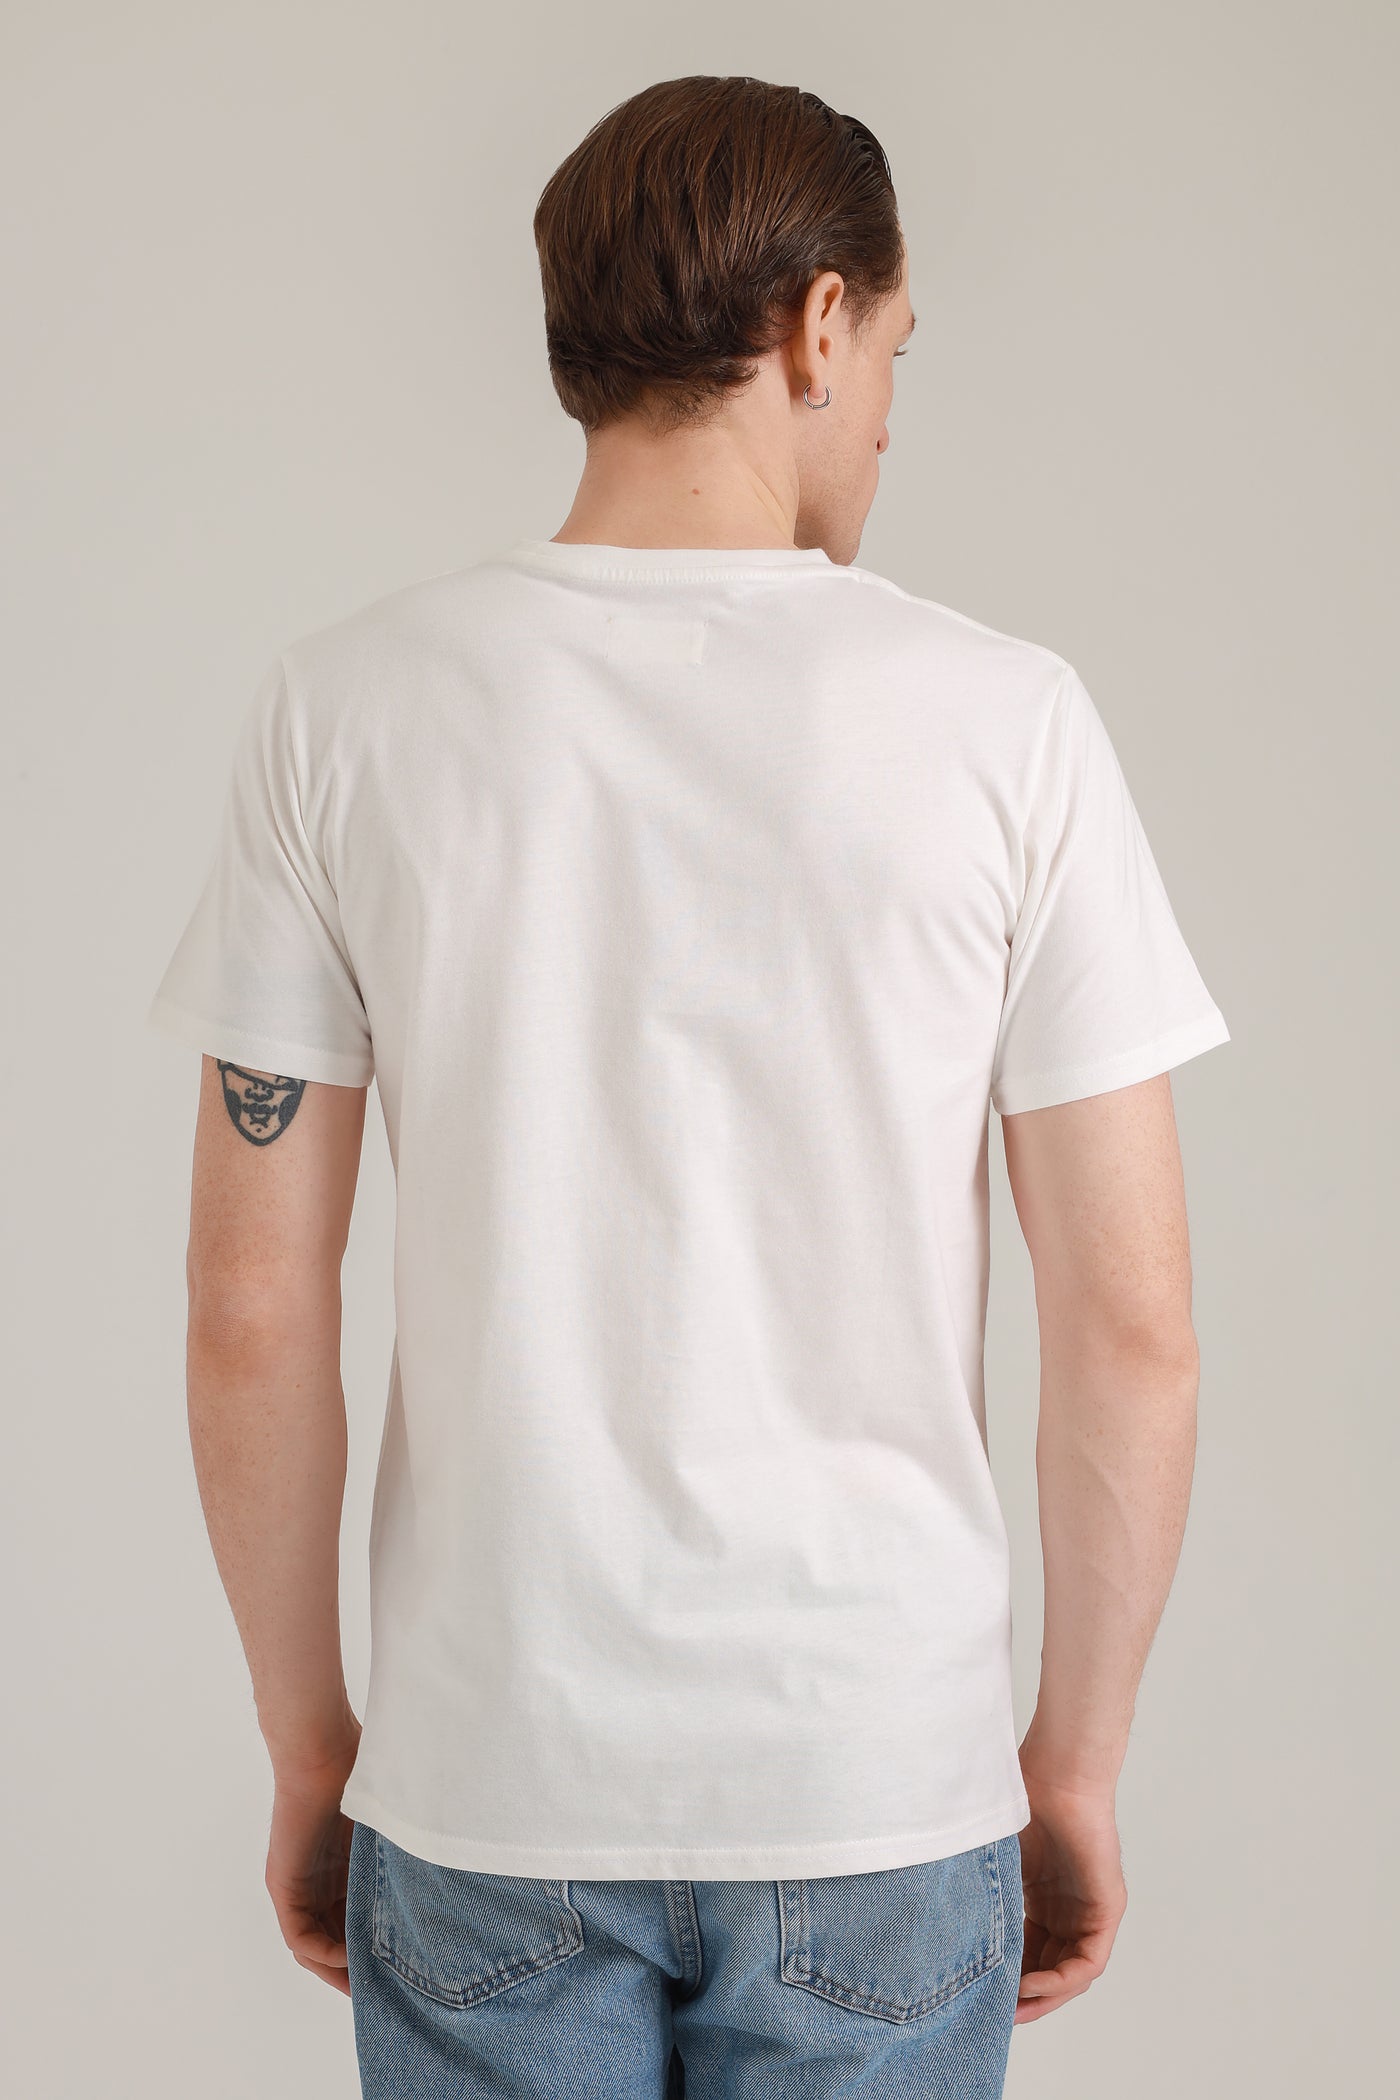 T-Shirt Men Cool Paka White